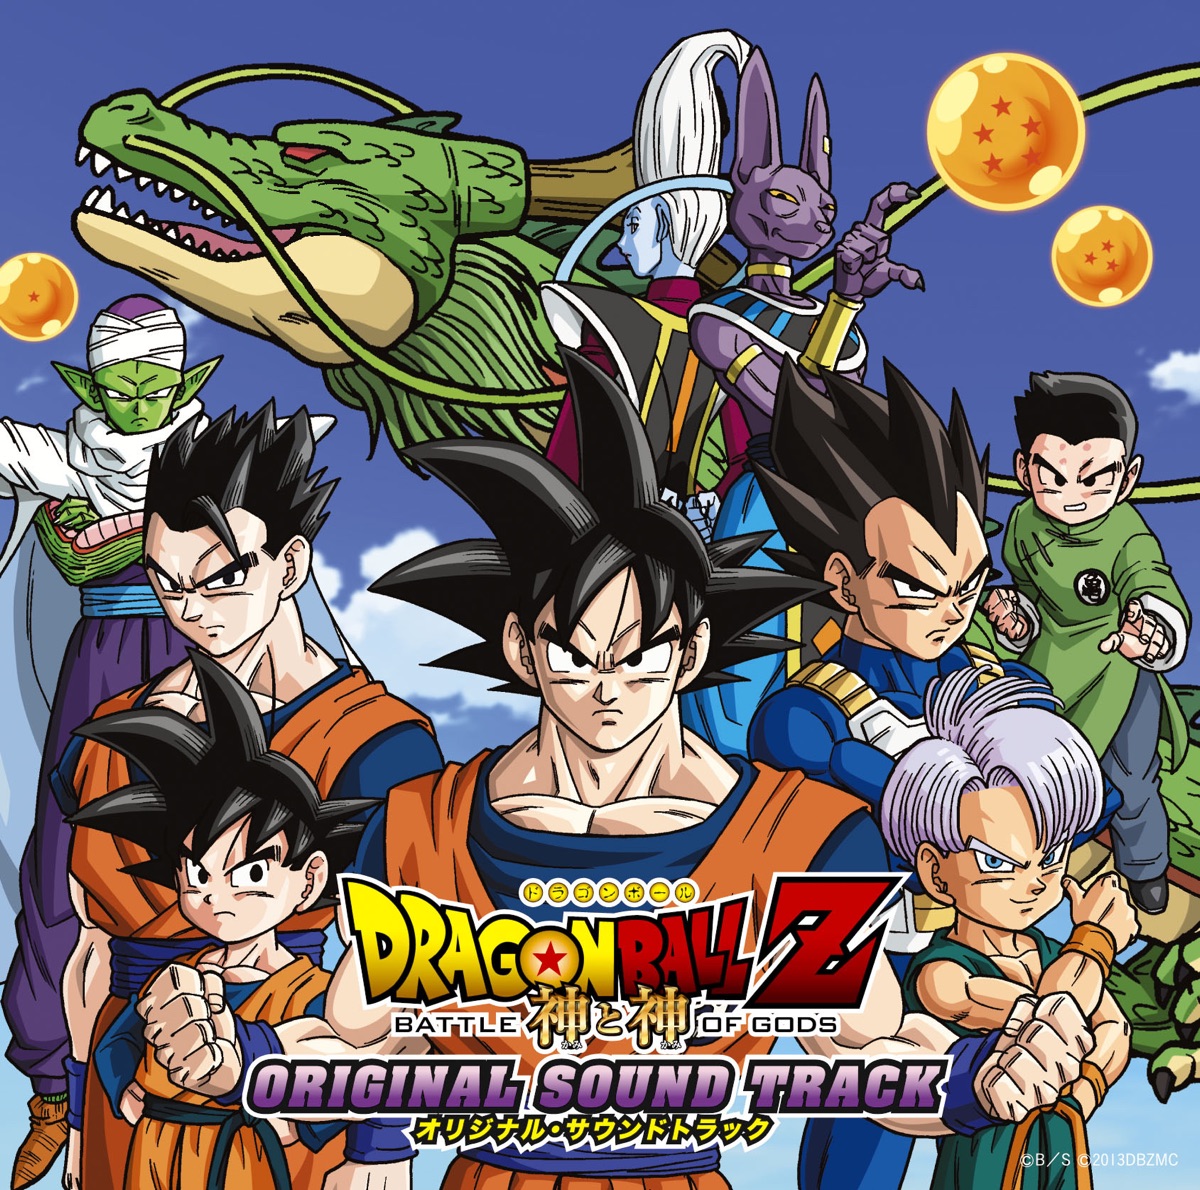 Dragon Ball Super Super Hero Movie / O.S.T. - Dragon Ball Super Super Hero ( Movie) - Original Soundtrack - CD 